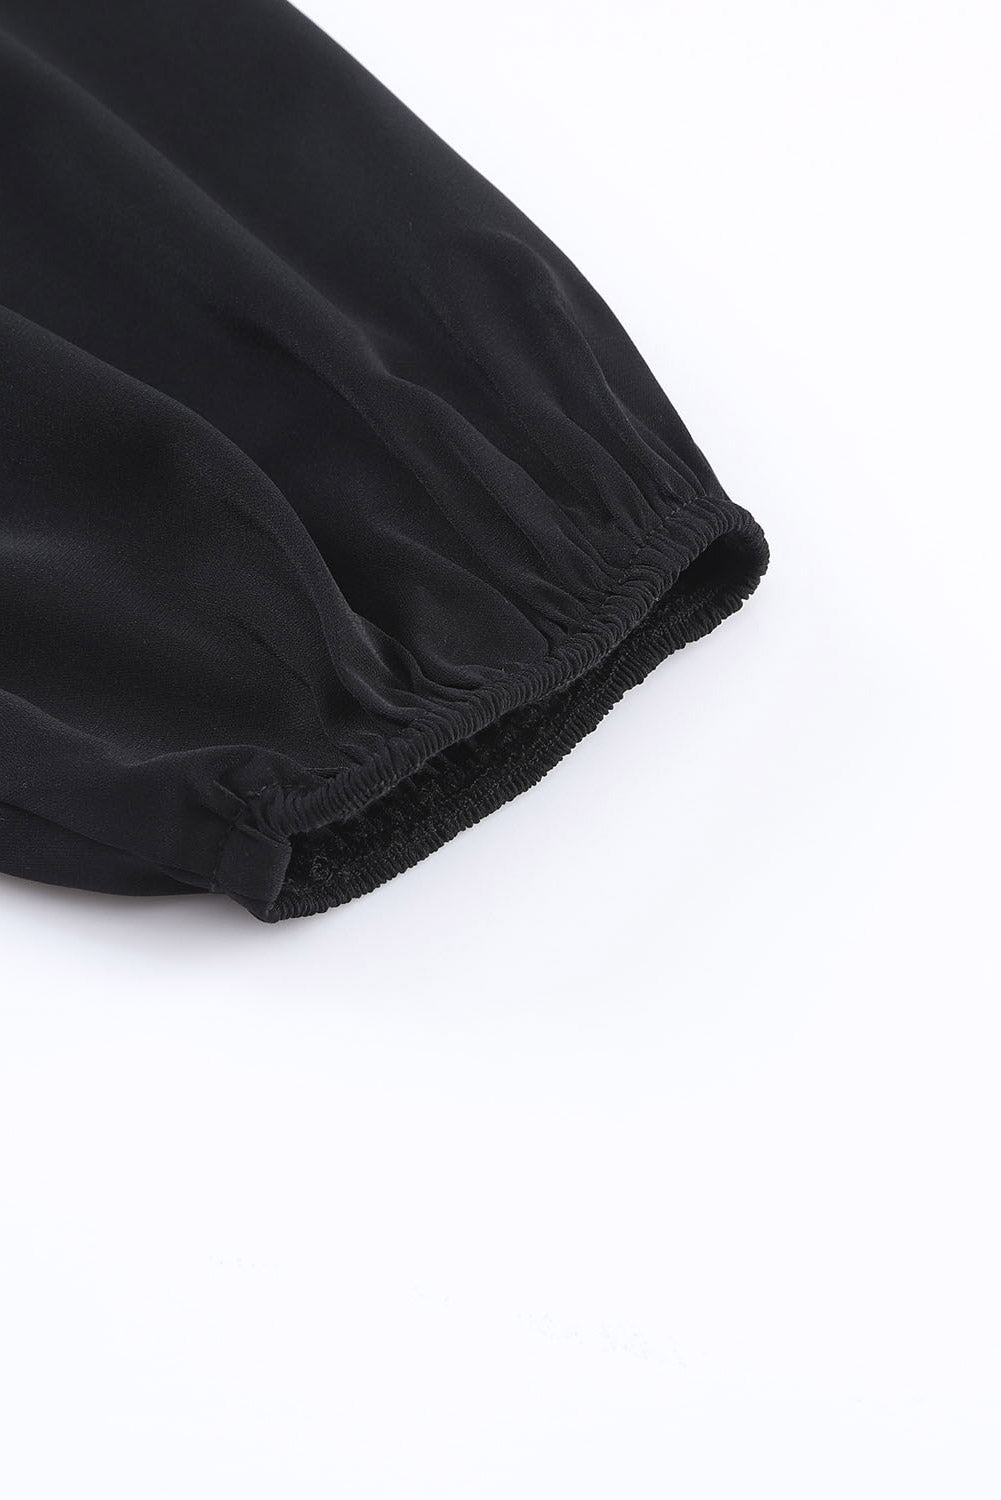 Crna asimetrična bluza s otvorenim ramenima s čvorovima